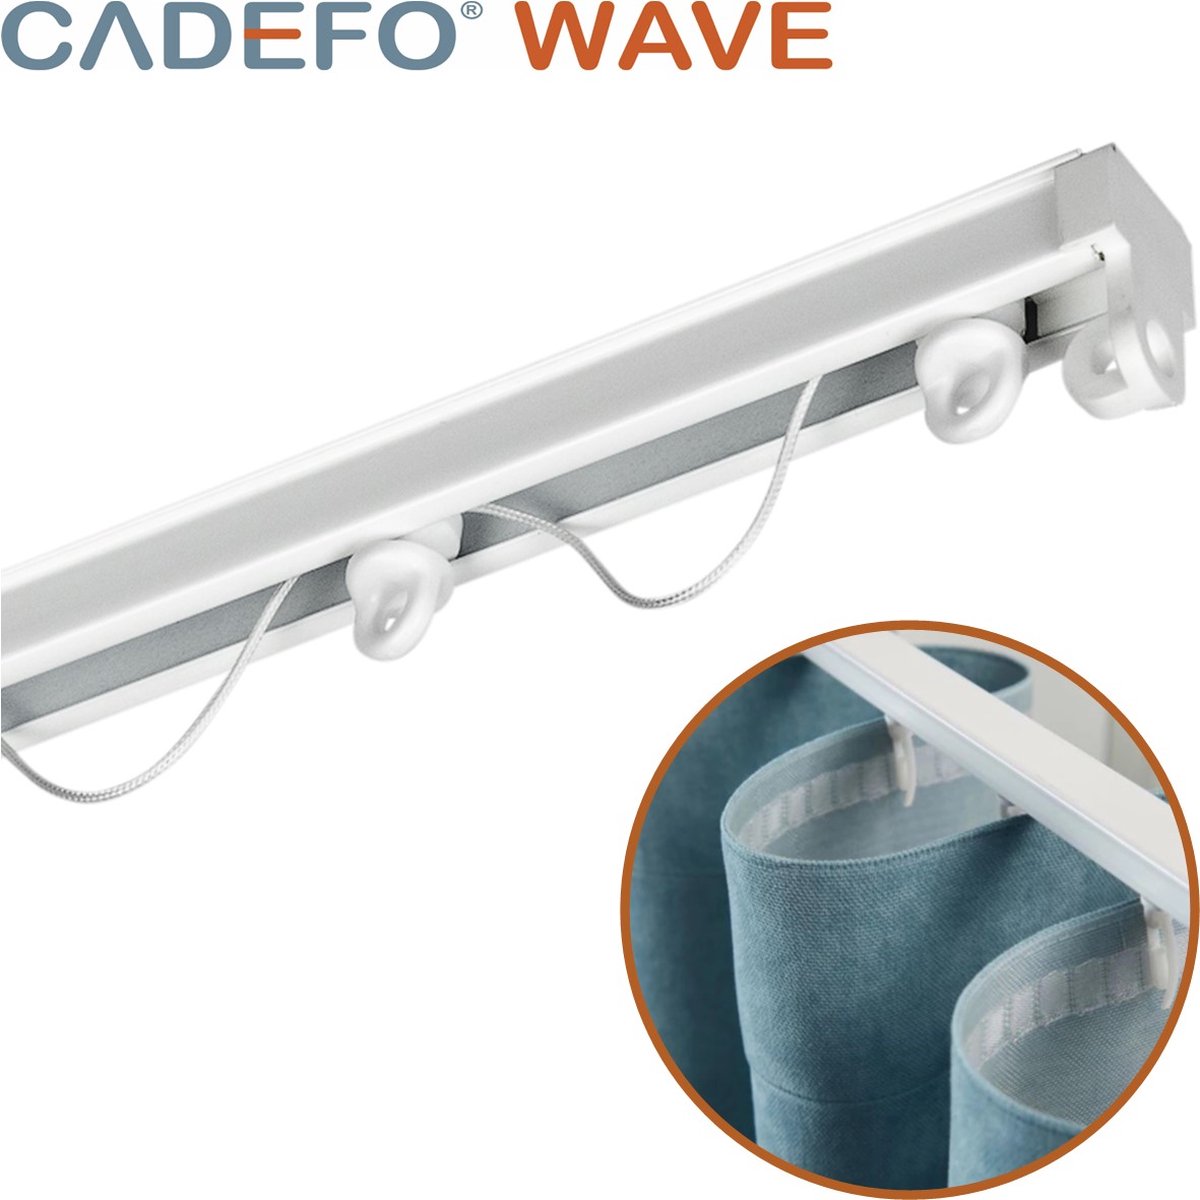 CADEFO WAVE (151 - 200 cm) Gordijnrails - Compleet op maat! - UIT 1 STUK - Leverbaar tot 6 meter - Plafondbevestiging - Lengte 151 cm